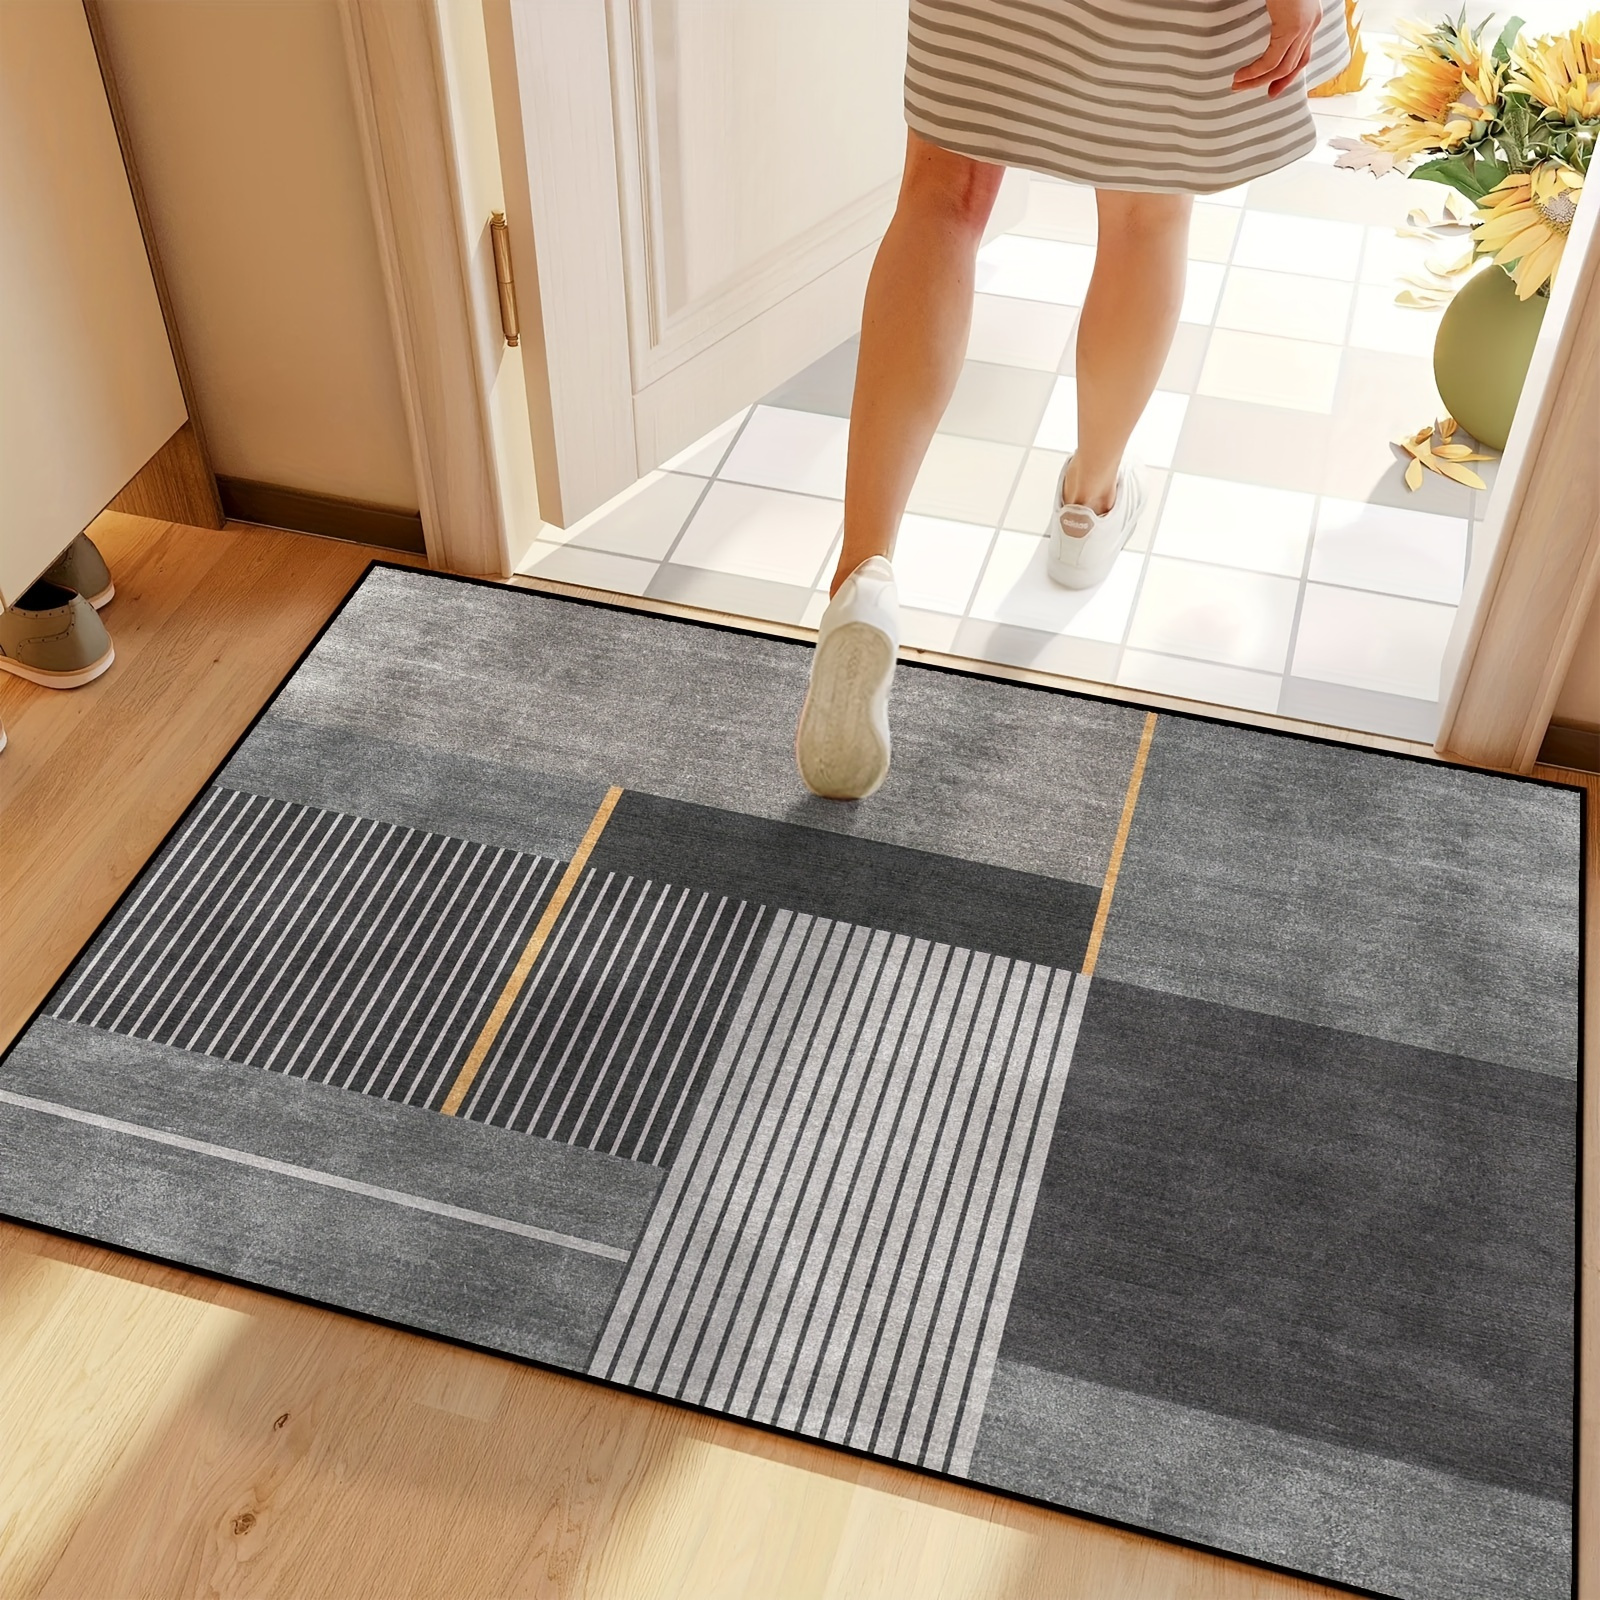 Moderna cocina de diseño personalizado en 3D de felpa alfombrilla  antideslizante alfombra lavable la impresión digital Salón Alfombra - China  Impreso en 3D de alfombras modernas alfombras y alfombra precio